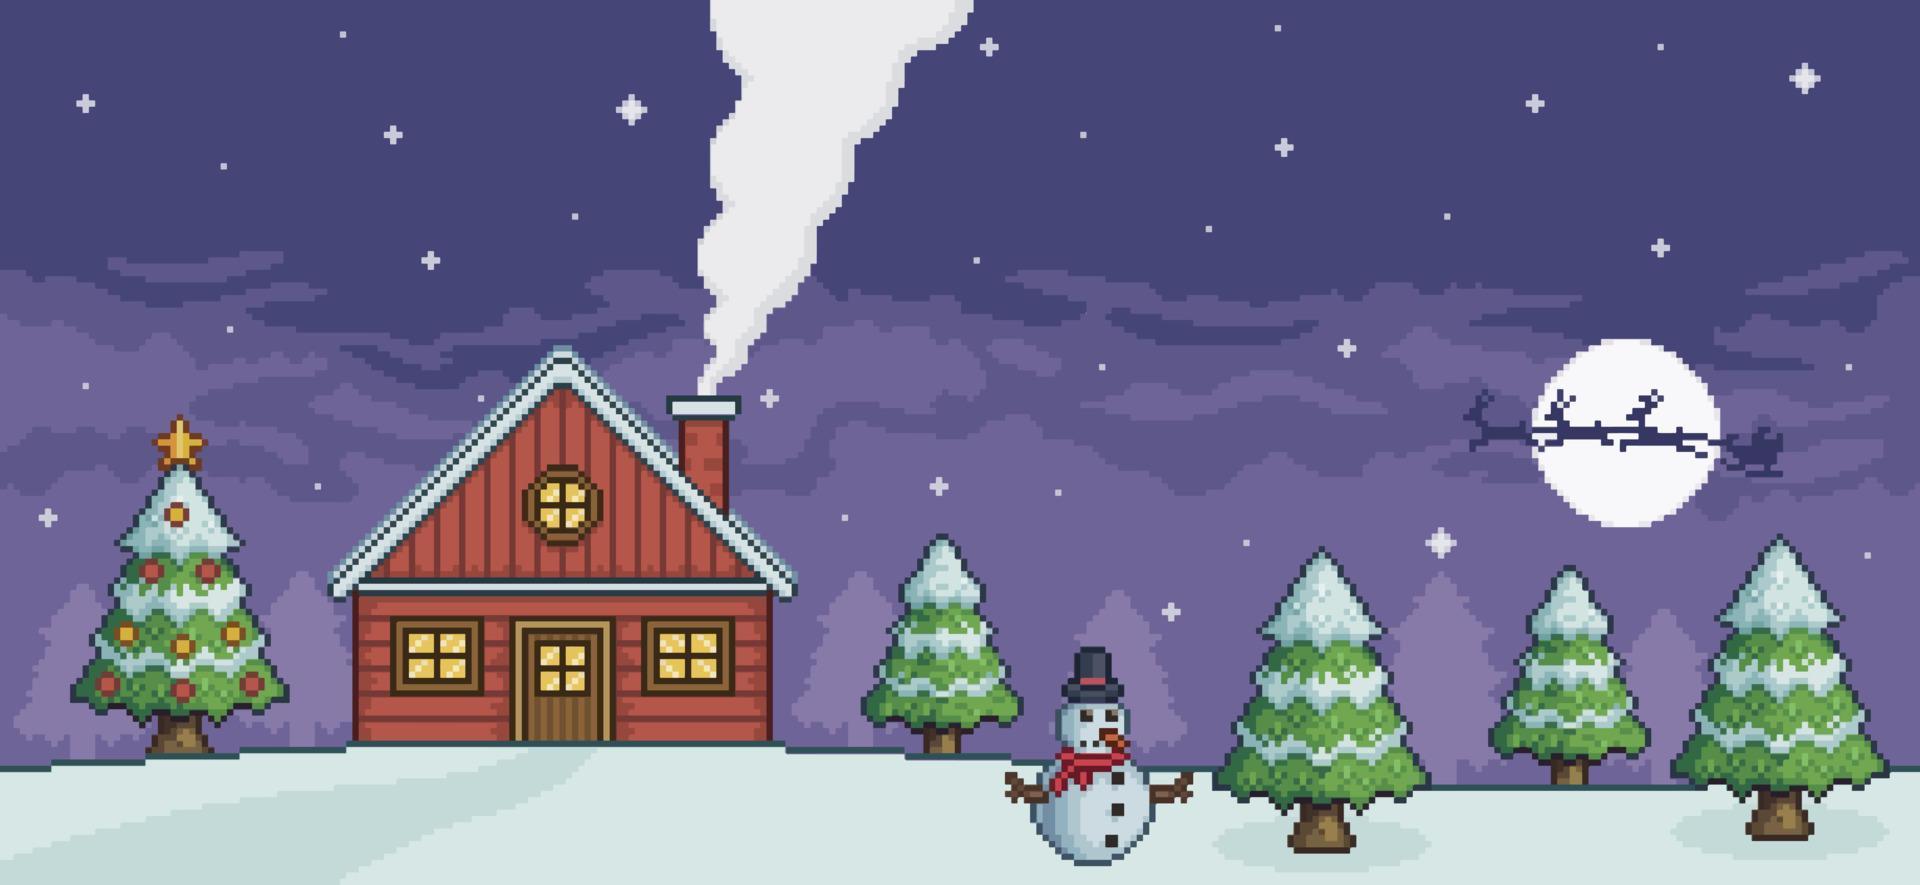 paysage de noël pixel art la nuit avec maison rouge, arbre de noël, bonhomme de neige, père noël, pins et fond de jeu de neige 8 bits vecteur